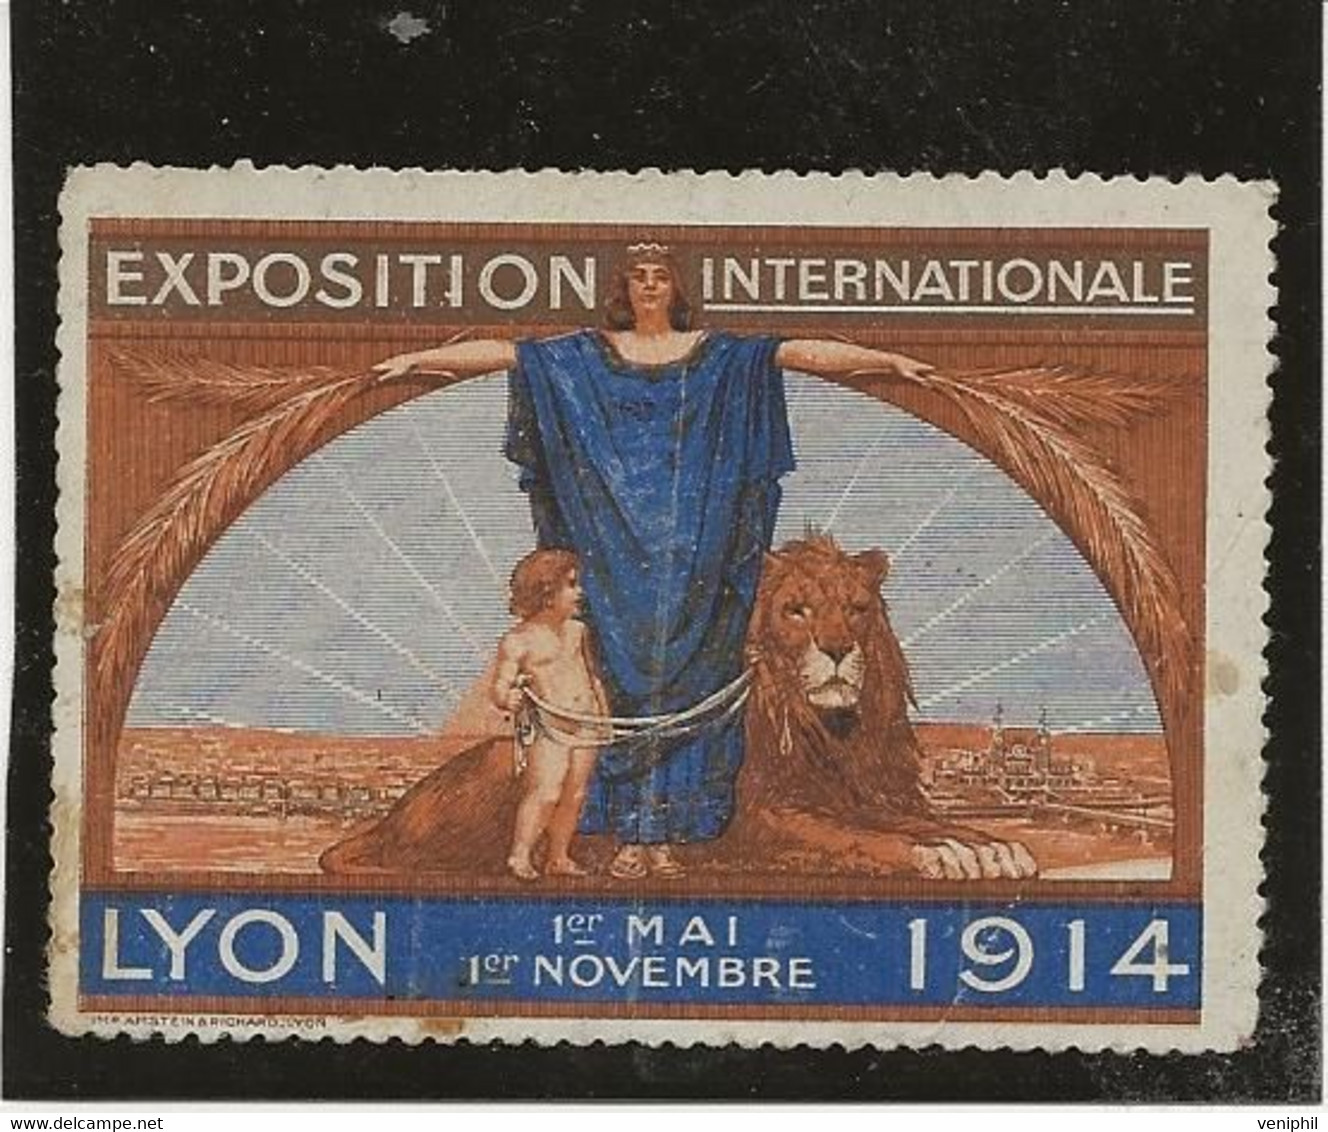 VIGNETTE EXPOSITION INTERNATIONALE LYON  1ER MAI -1ER NOVEMBRE - 1914 - Tourisme (Vignettes)